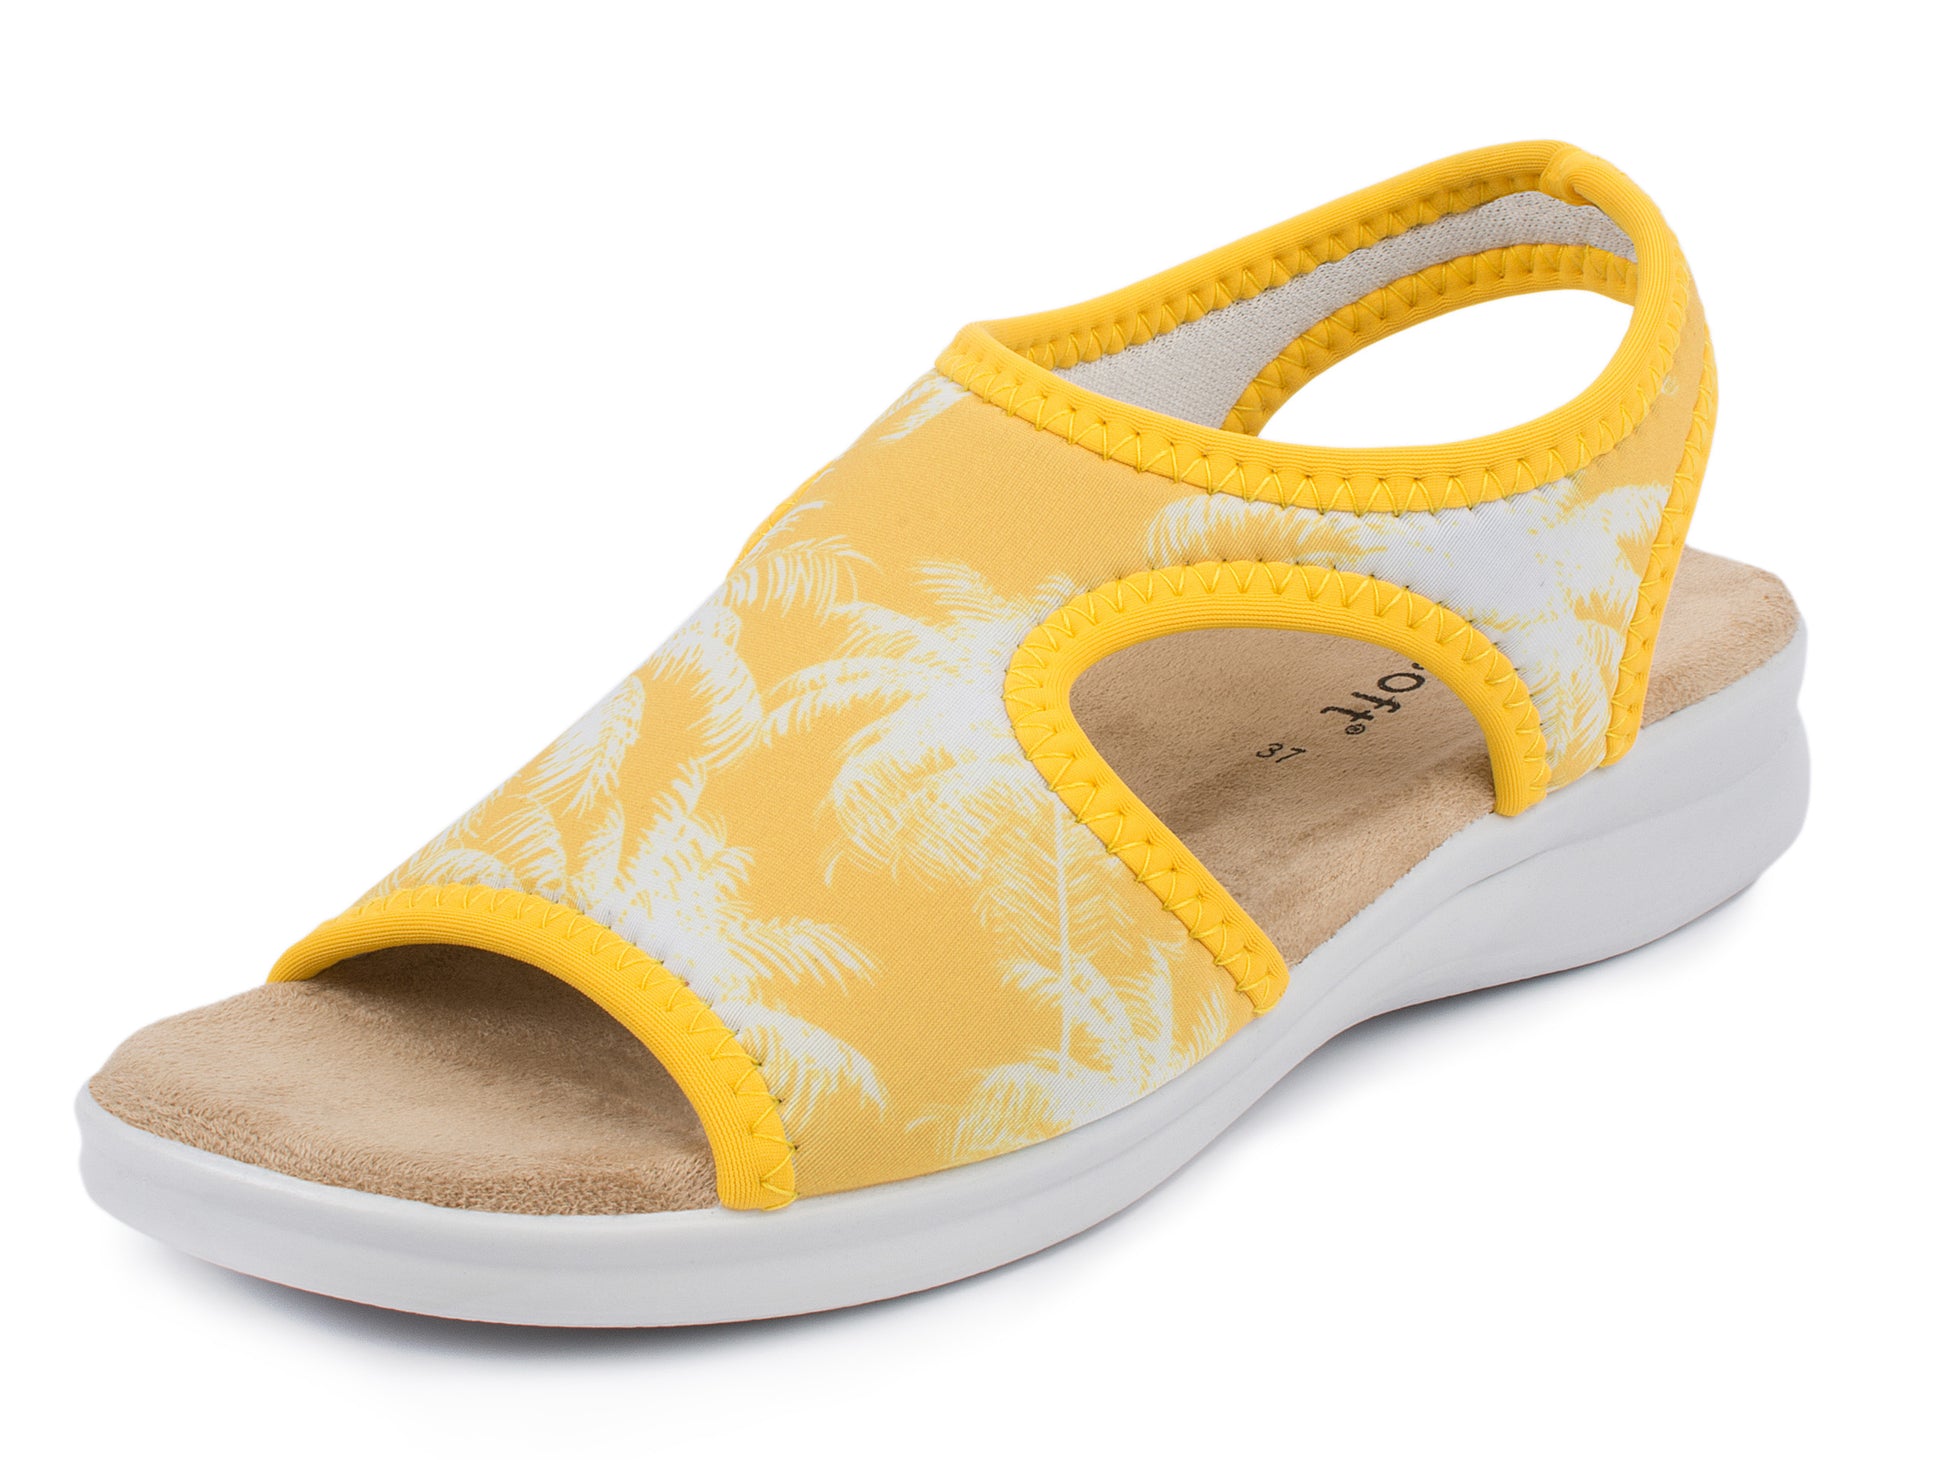 Damen Stretch Sandalette Modell Stretch 05 von Aerosoft in der Farbe Palme gelb von vorne leicht seitlich